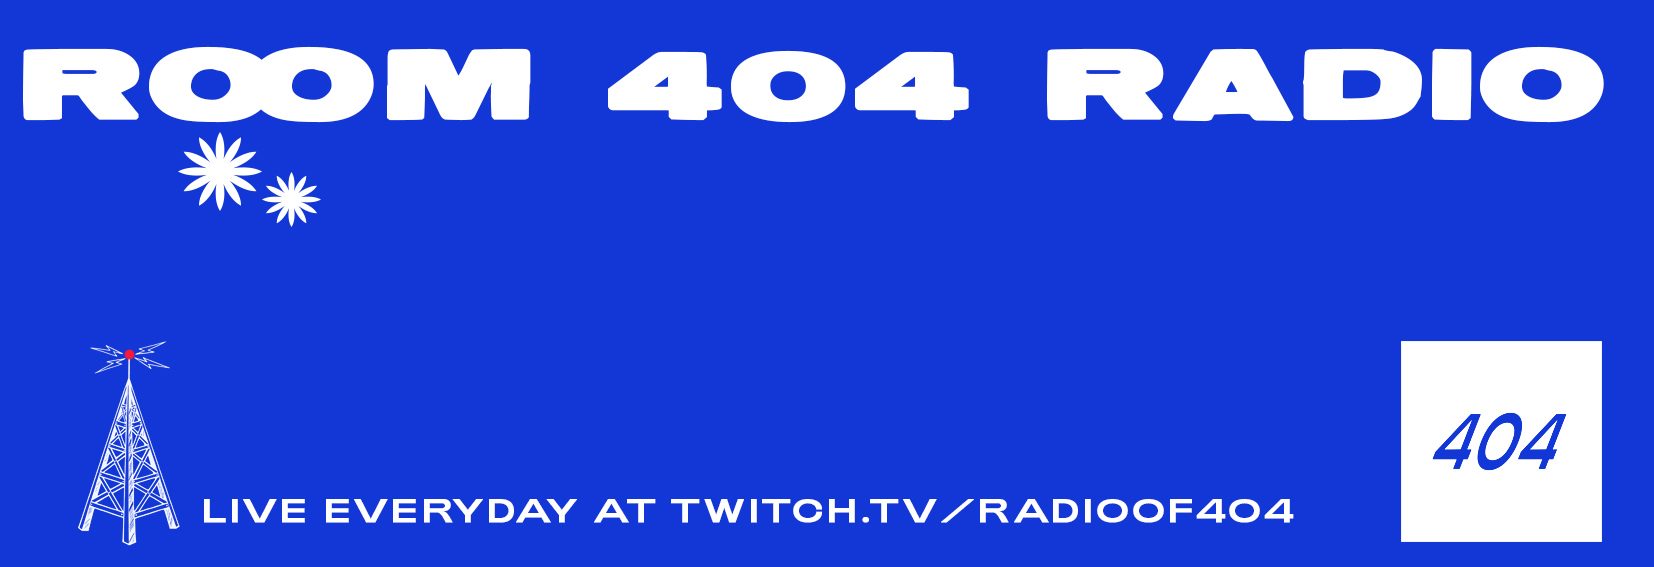 Room 404 Radio